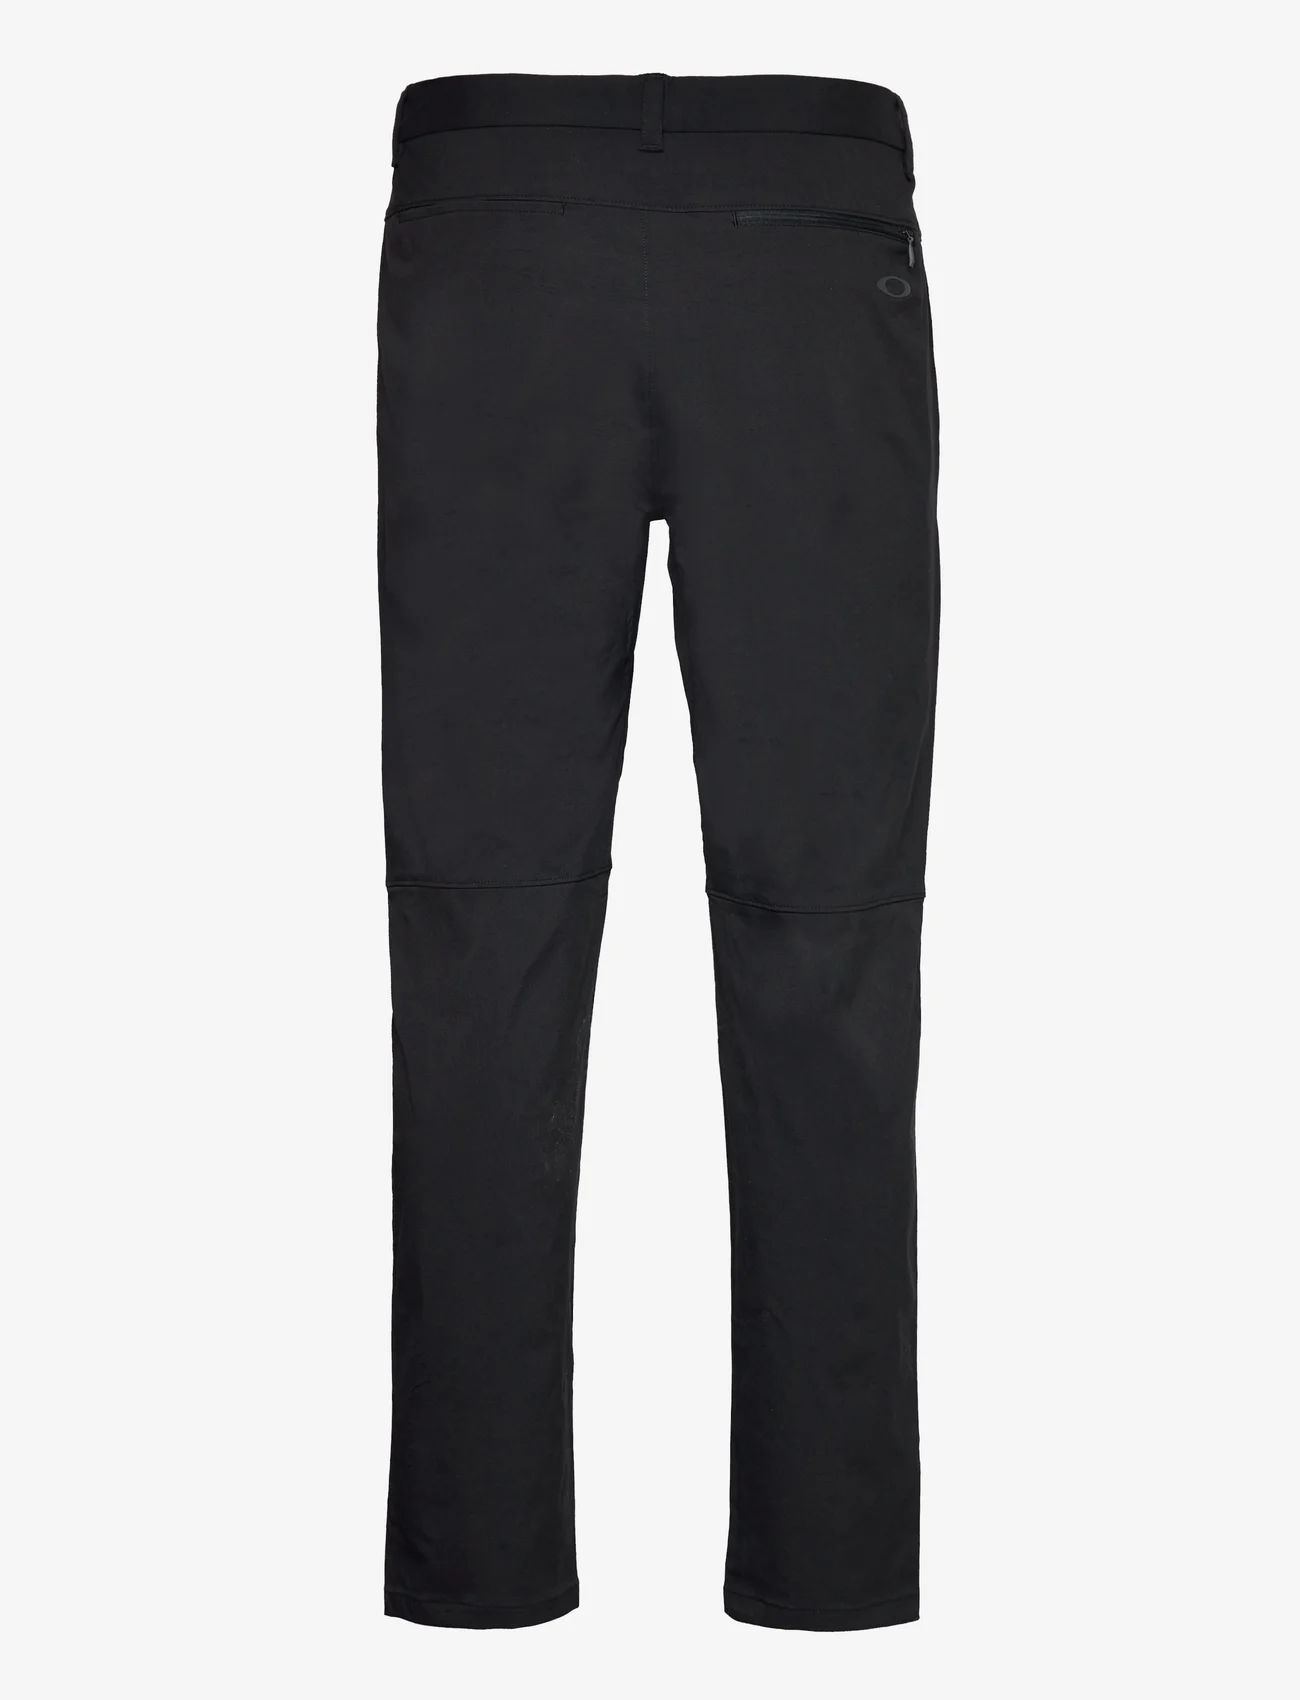 Oakley Sports - OAKLEY PERF TERRAIN PANT - golf pants - blackout - 1